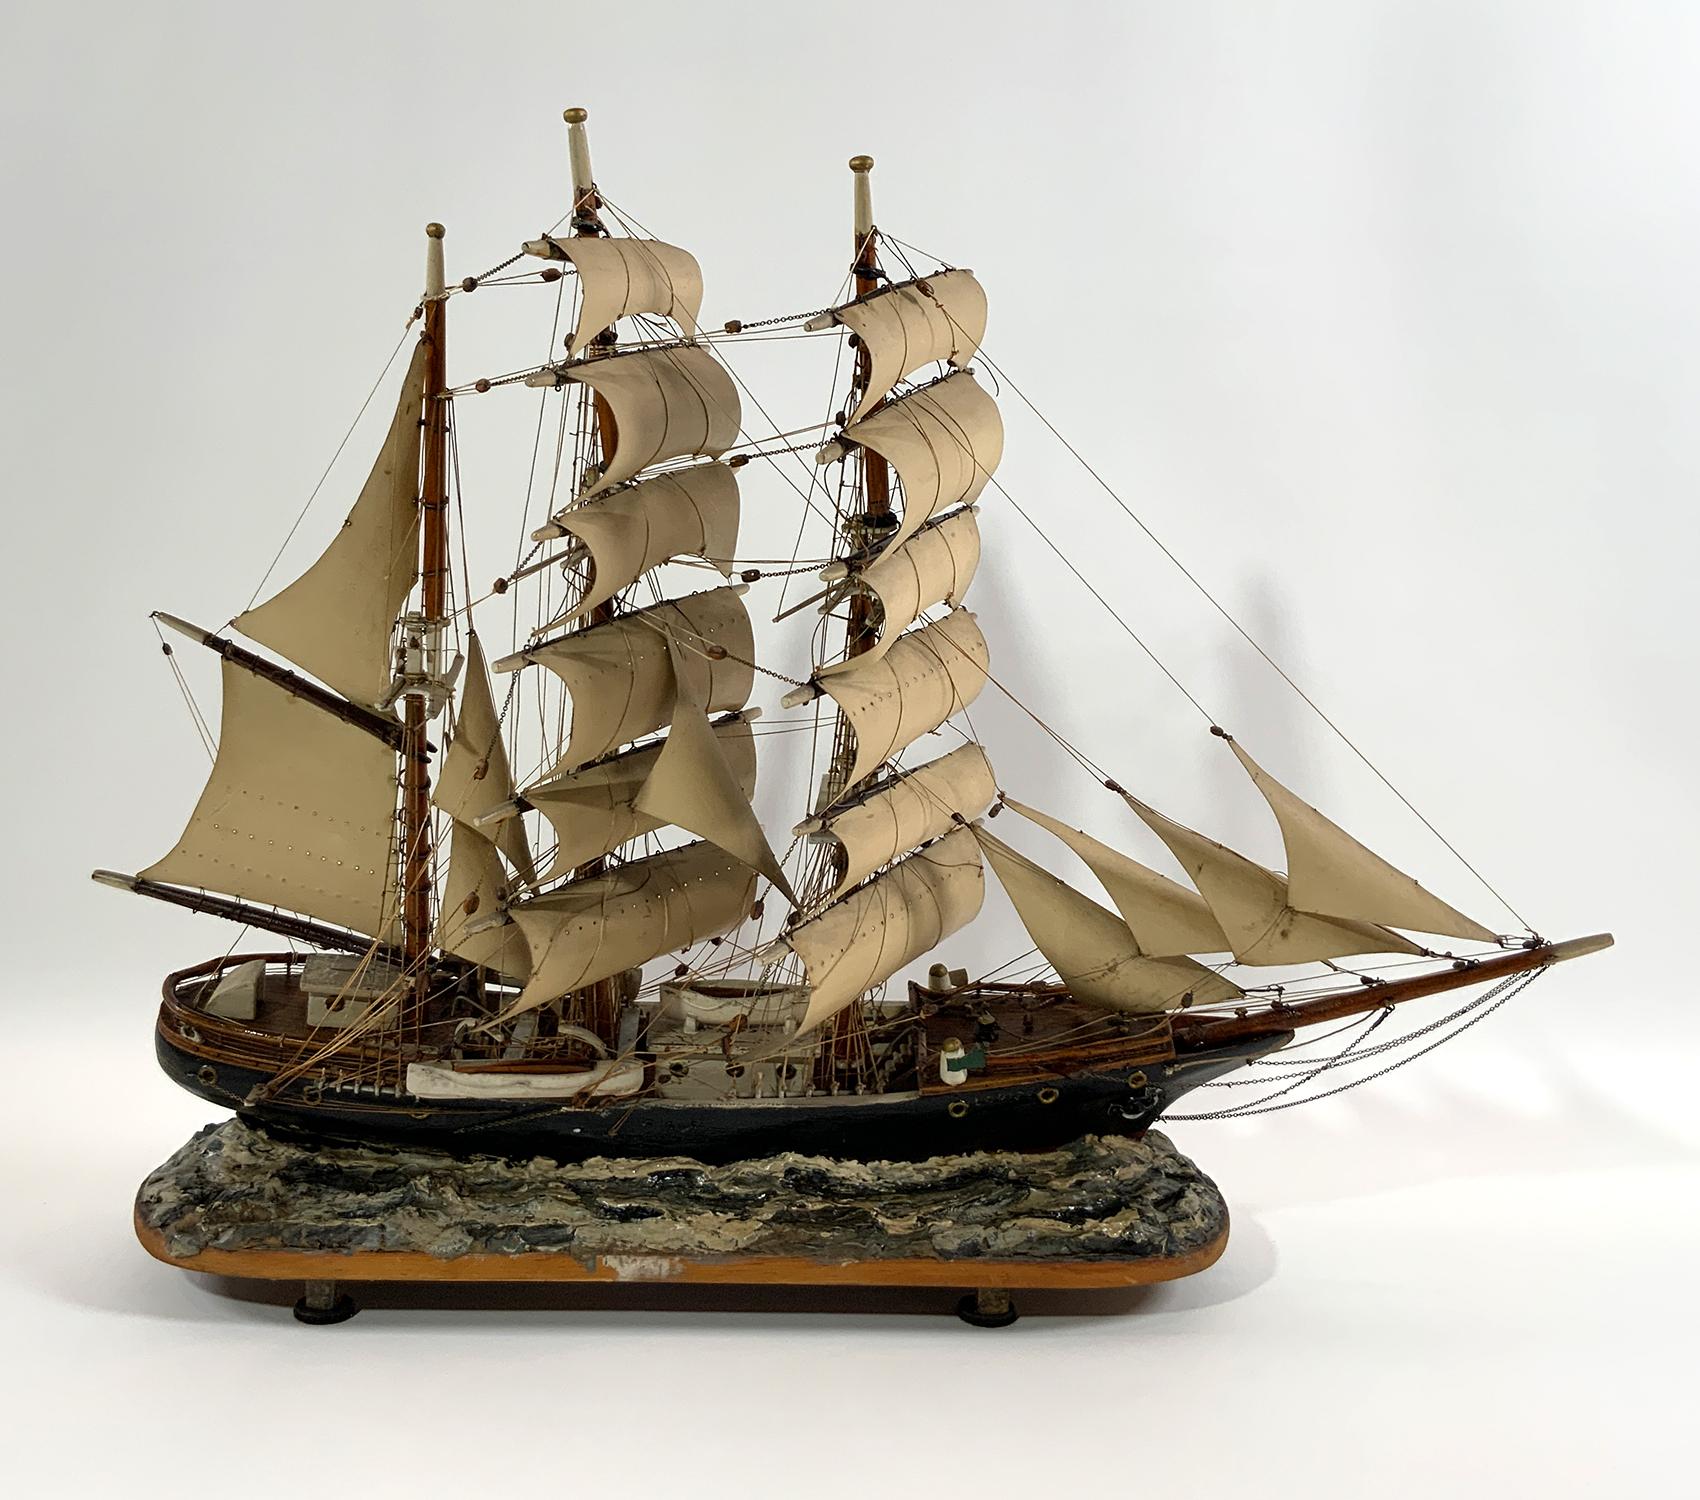 Charmante maquette de bateau antique représentant le Windjammer Louise naviguant à pleine voile sur des vagues d'argile. Superbe modèle de bateau ancien.